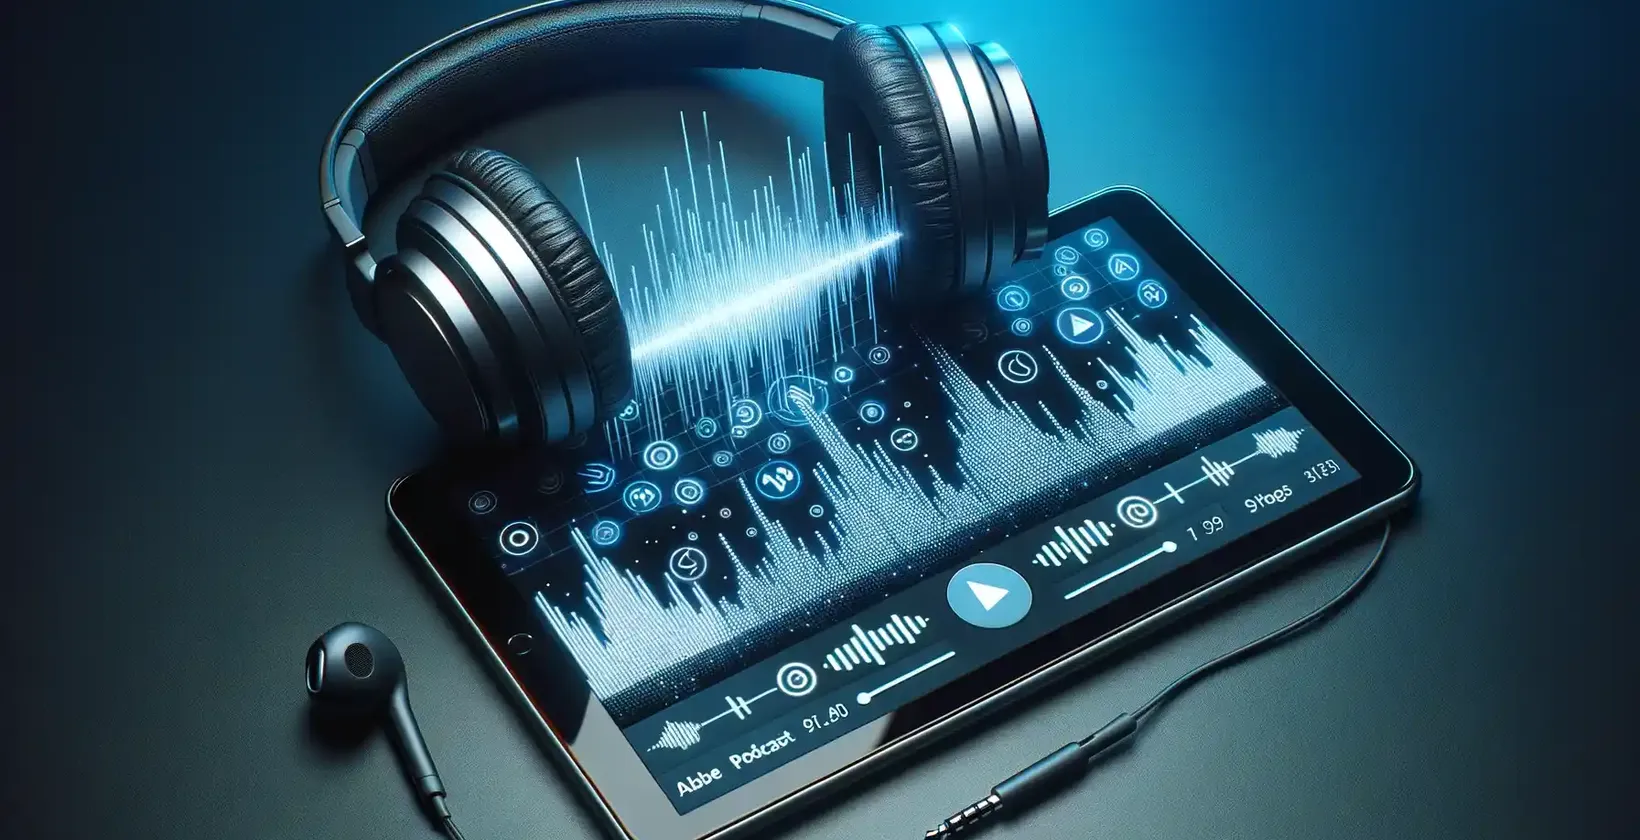 Planšetdatora ekrānā uz tumši zila fona vibrējoši attēloti skaņas viļņi, digitālās pogas un iestatījumi.